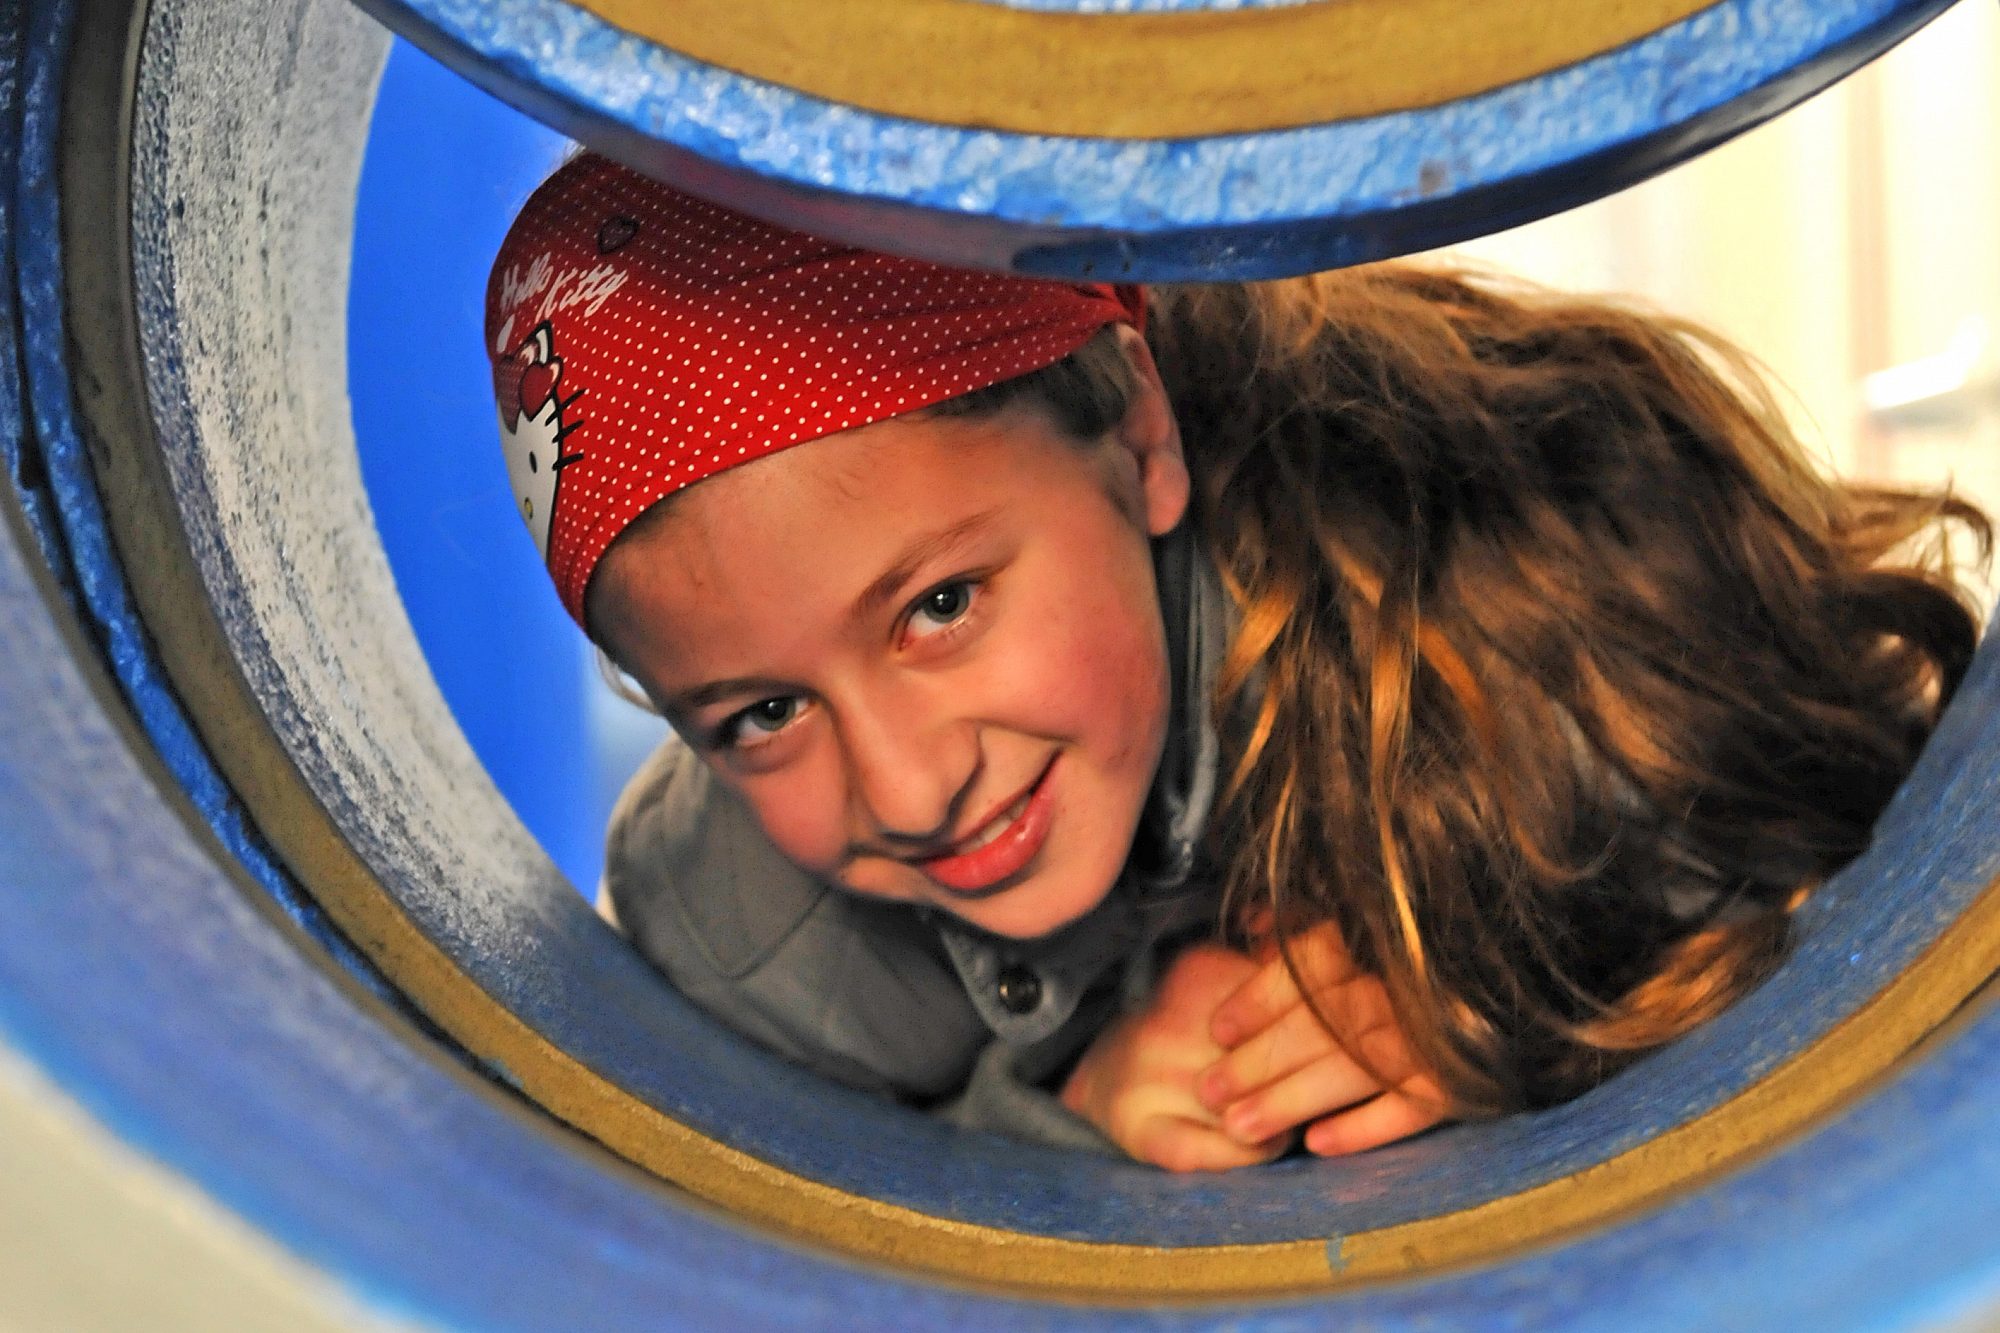 Ein Mädchen liegt in einer großen leeren Wasserleitung auf dem Bauch und schaut lächelnd aus dem Rohr.